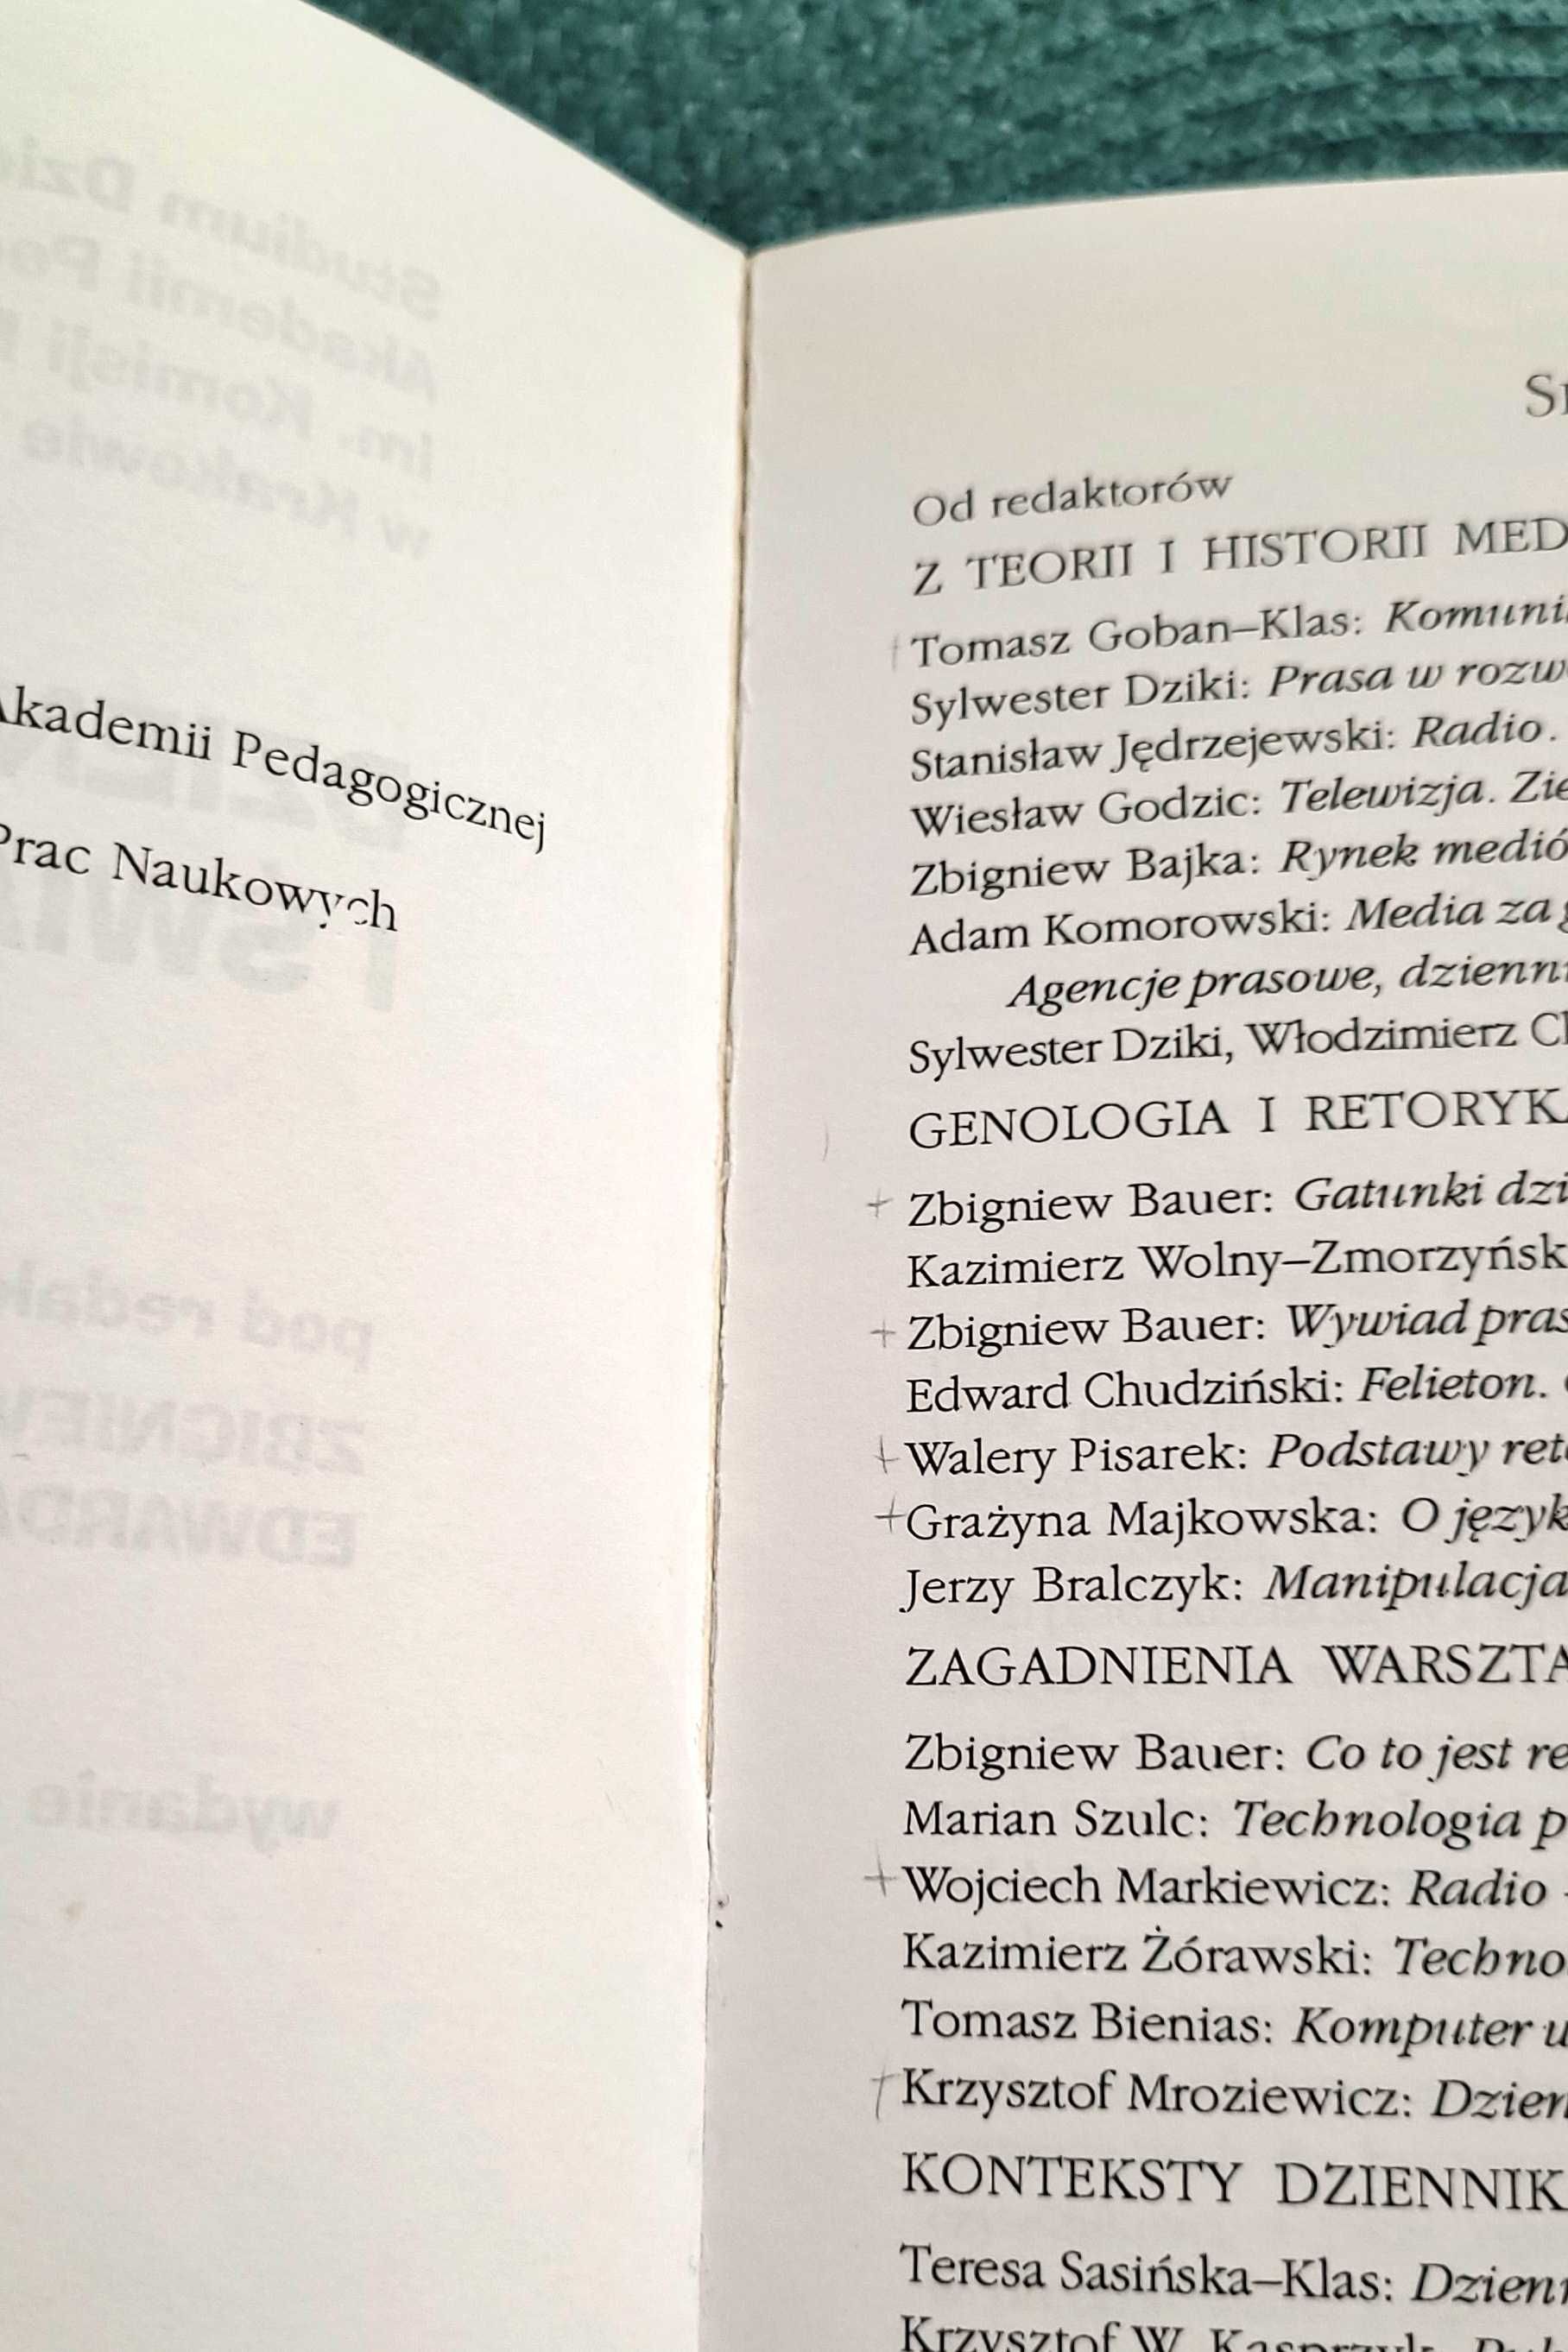 „Dziennikarstwo i świat mediów” Zbigniew Bauer, Edward Chudziński